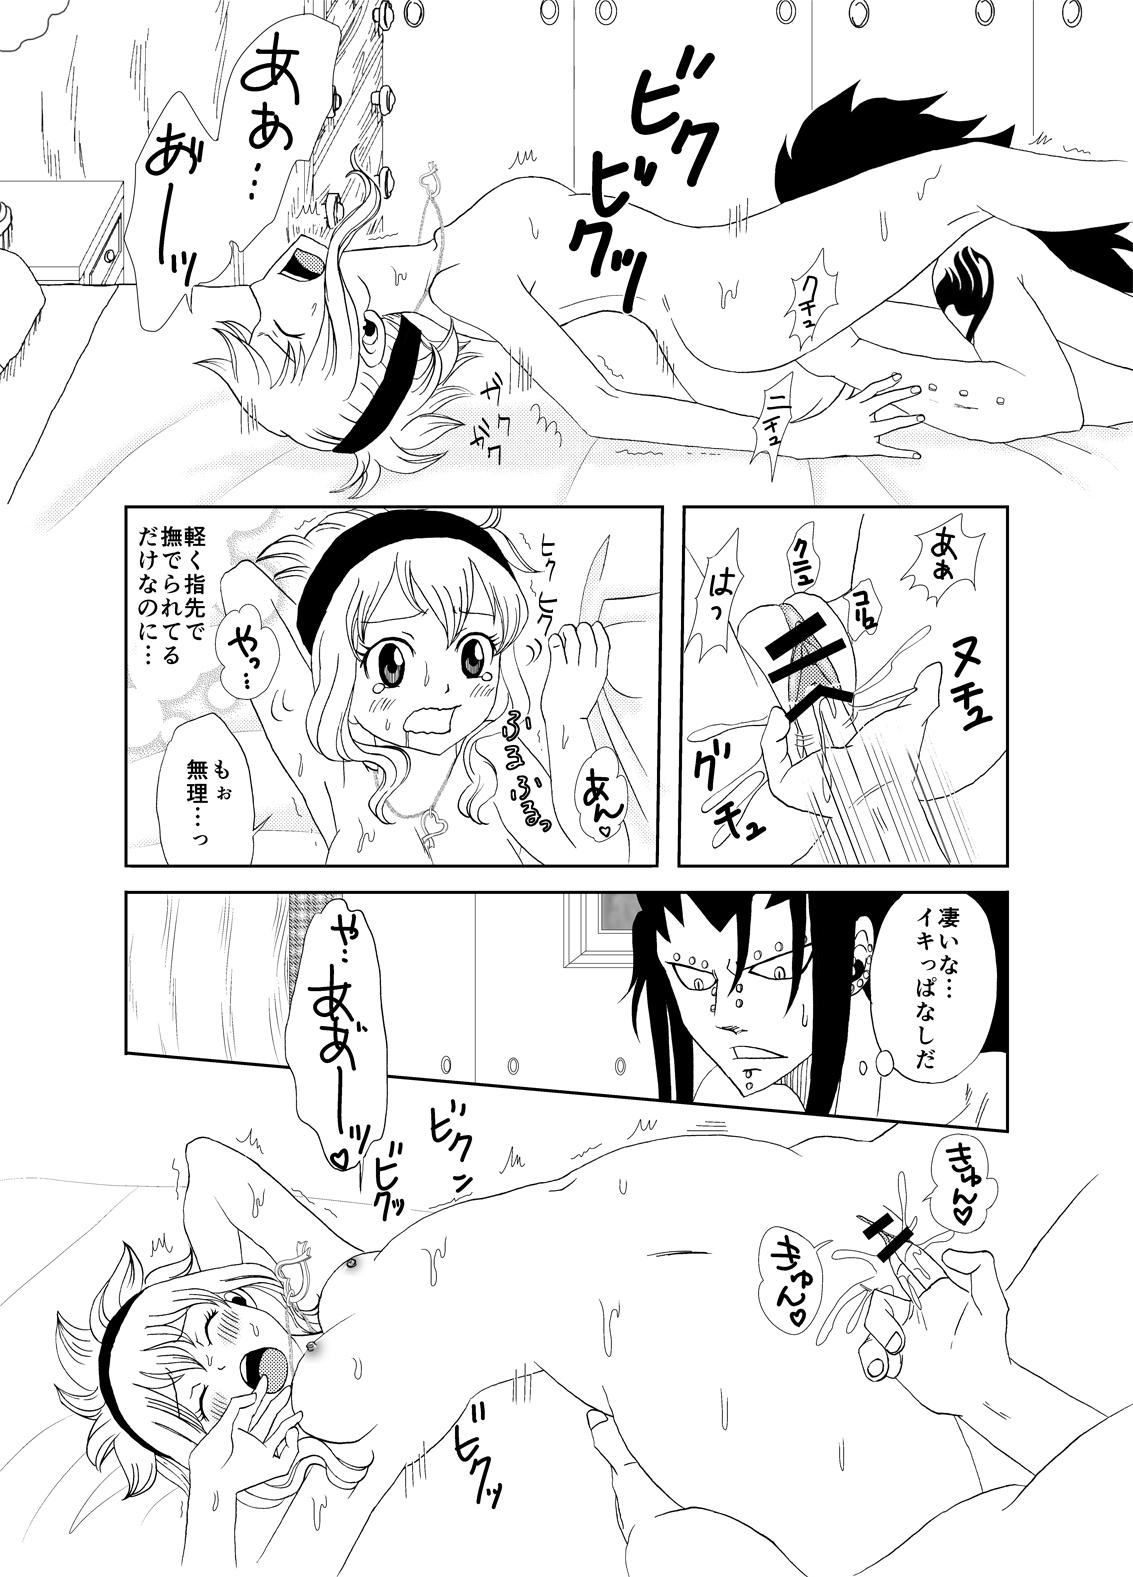 Nut GajeeLevy Christmas Manga - Fairy tail Flaca - Page 10